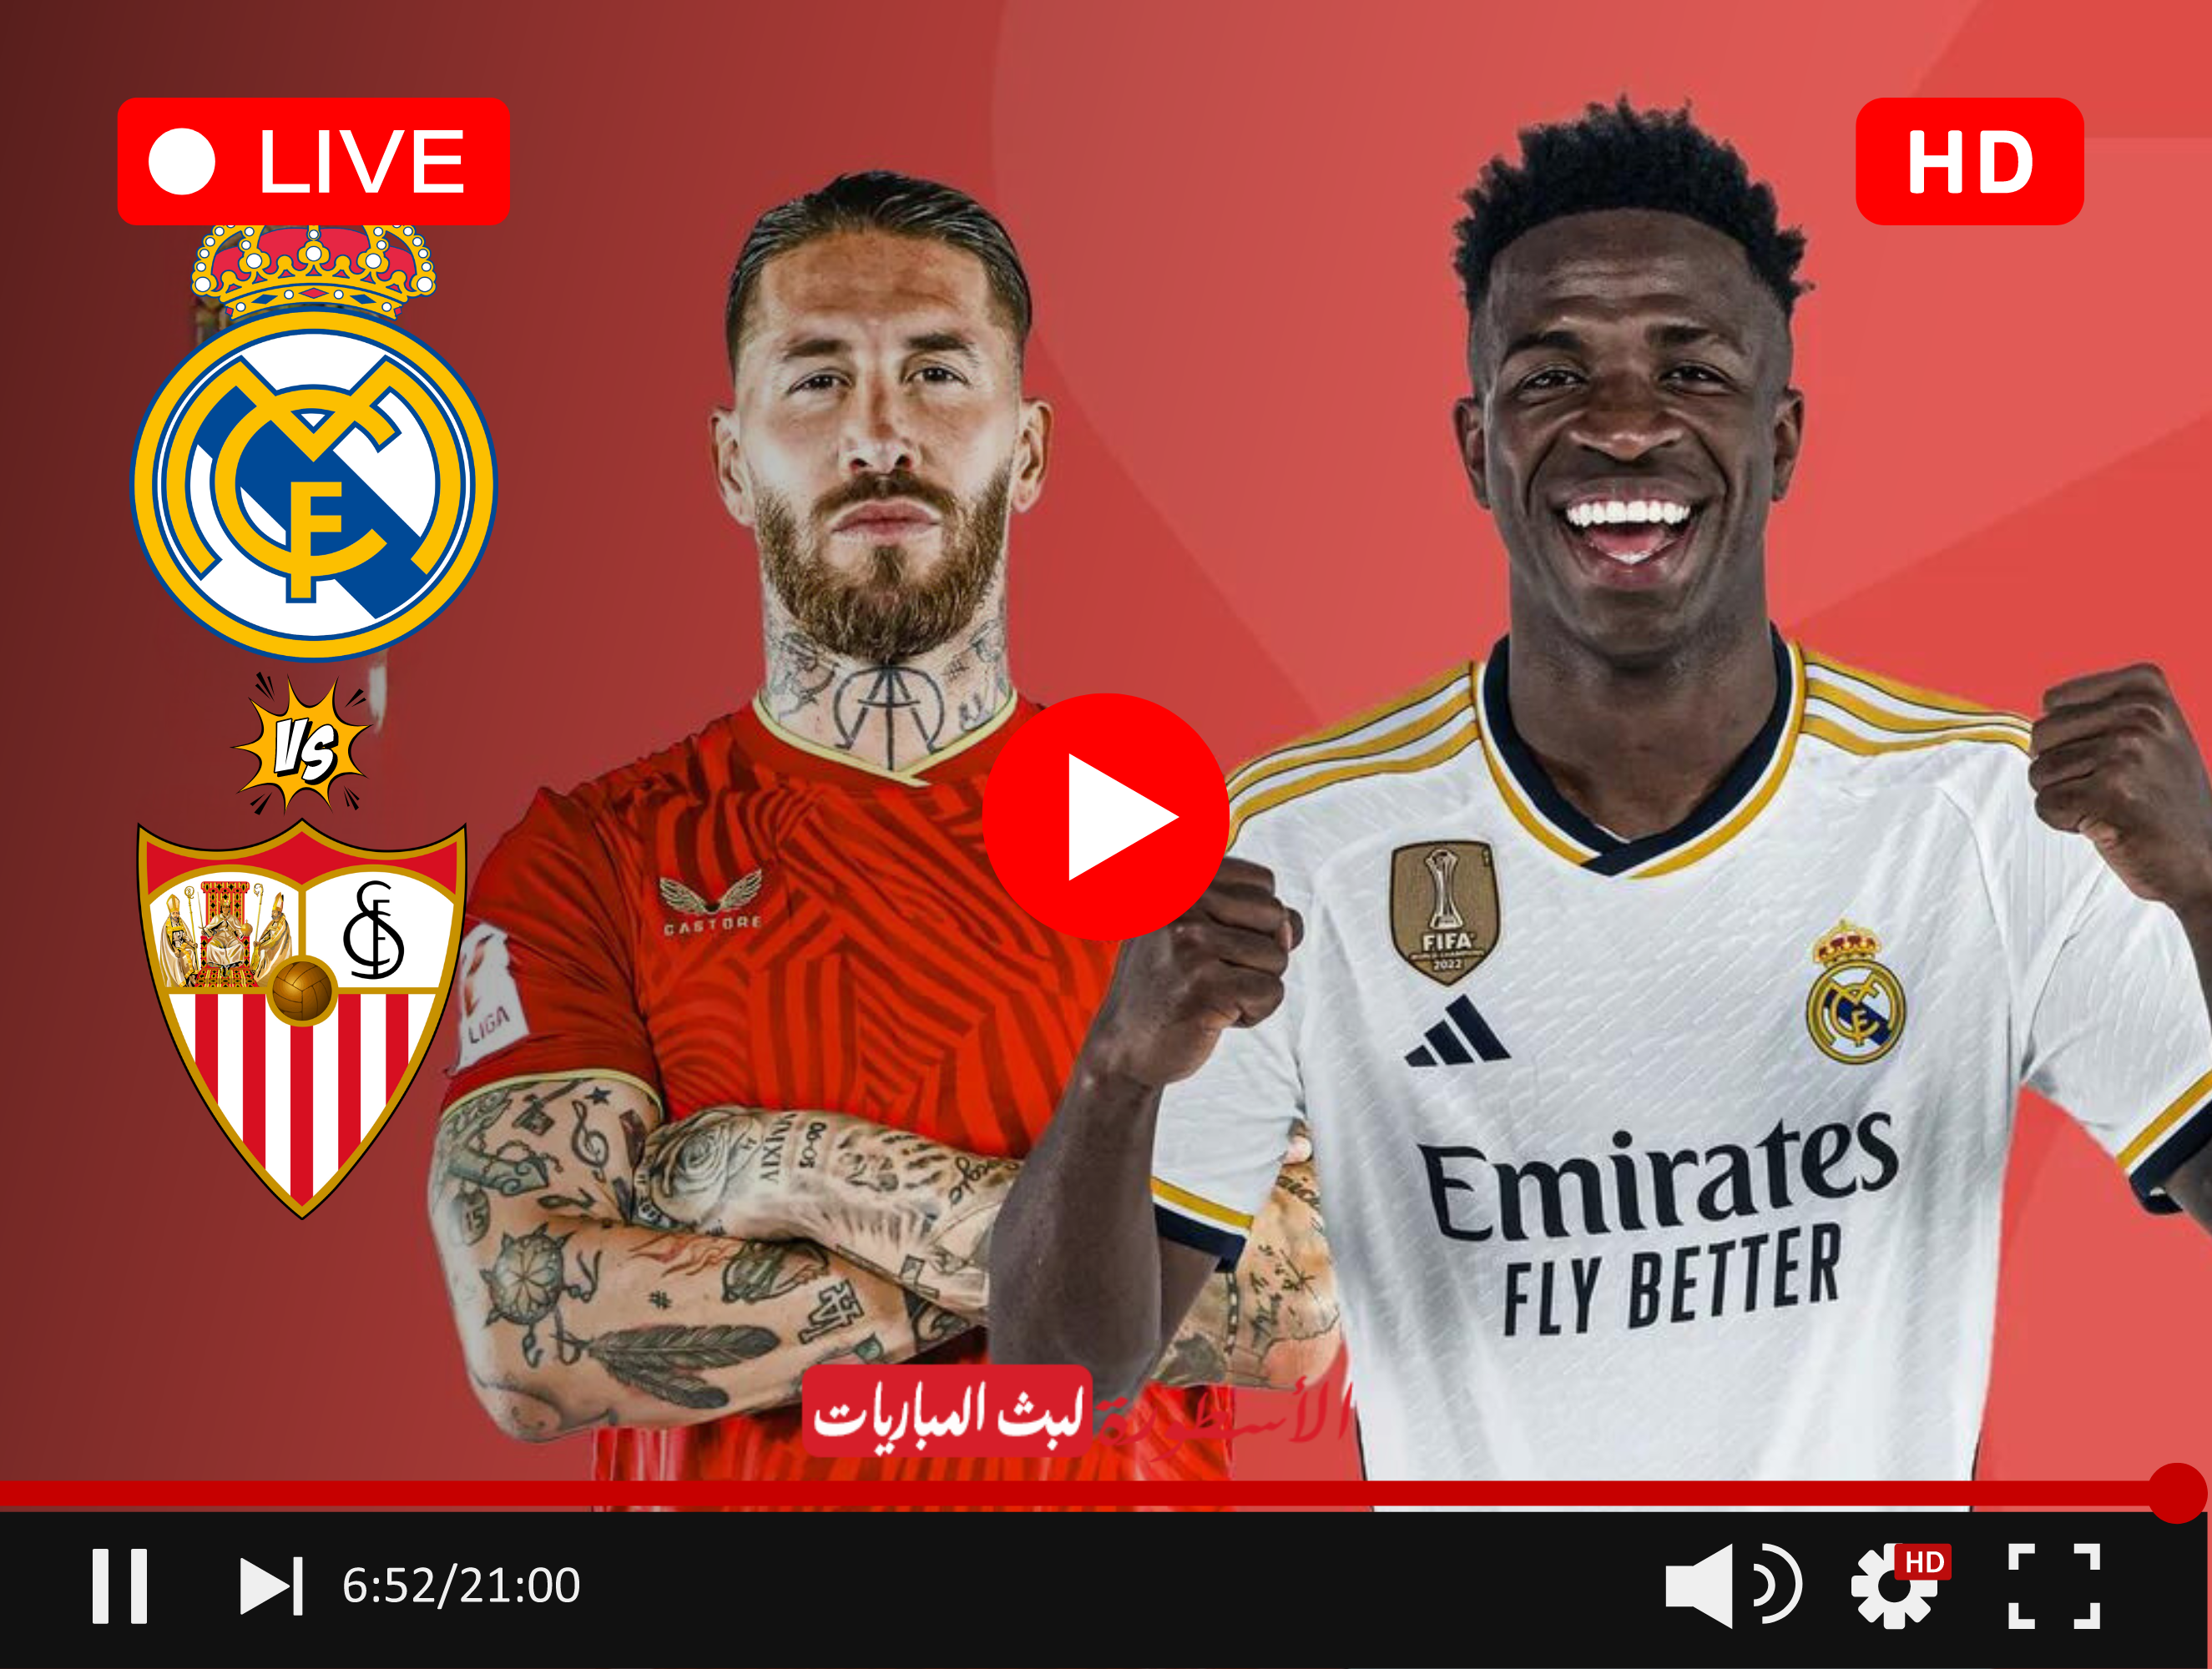 مباراة ريال مدريد وإشبيلية بث مباشر قناة beIN Sports HD 1 الدوري الإسباني الجولة 26 بتعليق عصام الشوالي